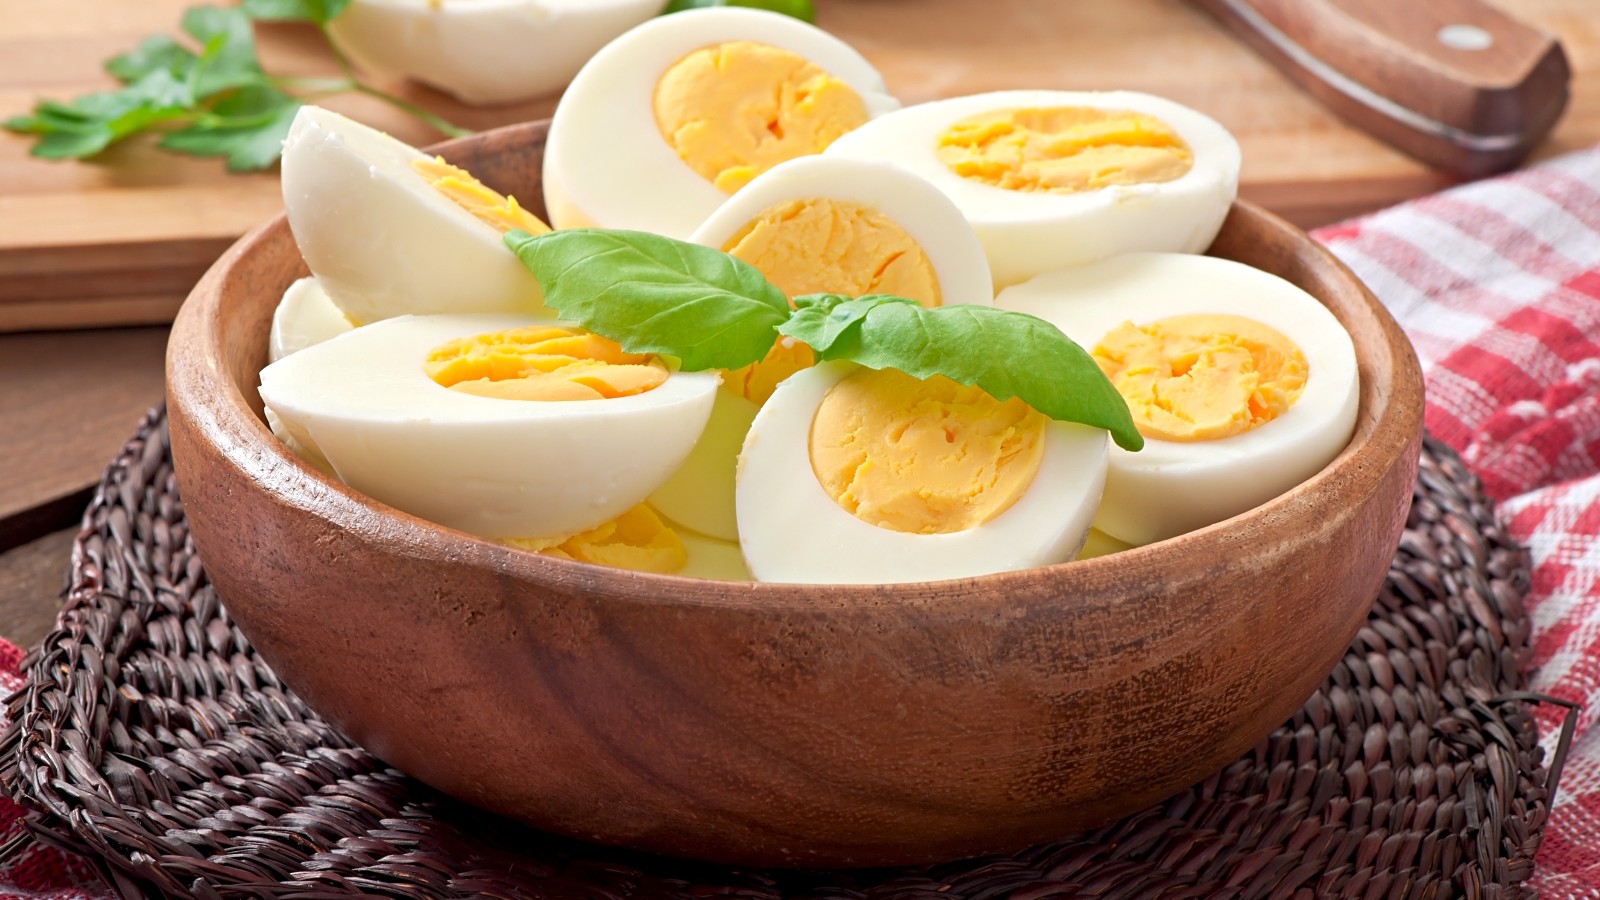 उम्र के साथ बढ़ रहा है कोलेस्ट्रॉल लेवल, तो जानिए आपको अंडे खाने चाहिए या नहीं